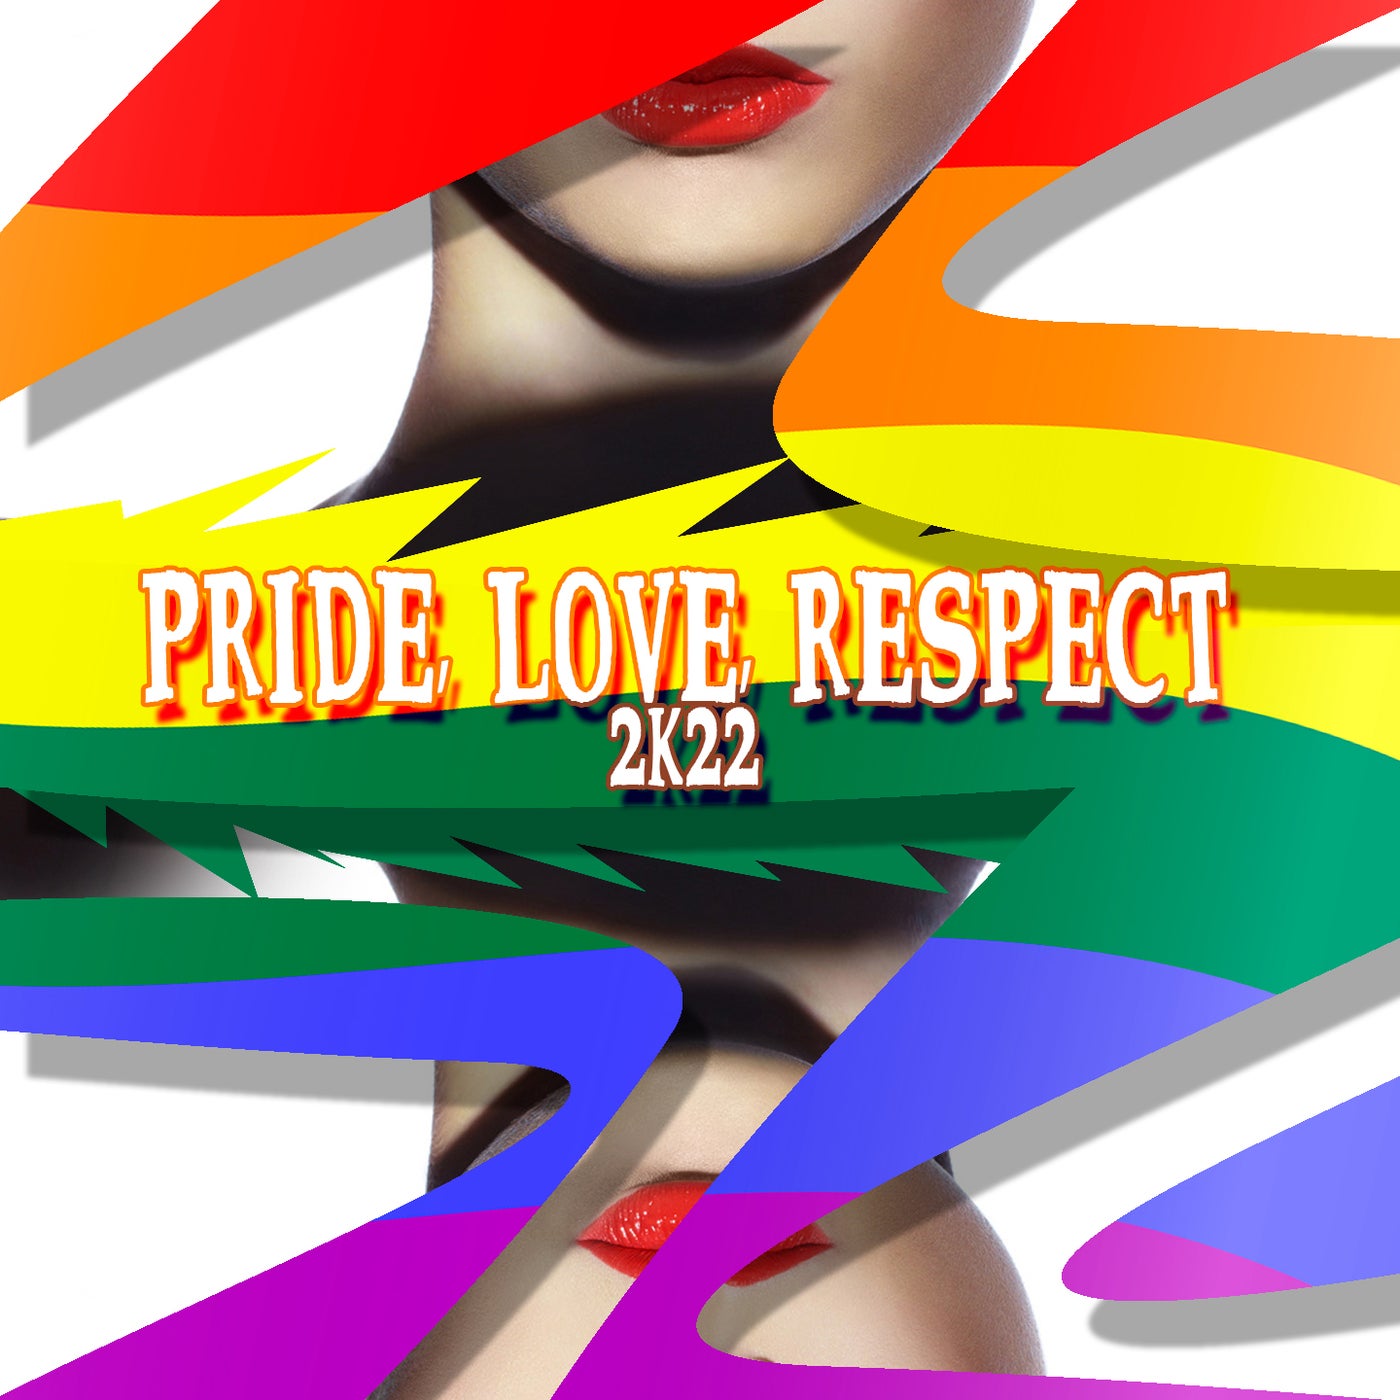 Pride, Love, Respect 2k22